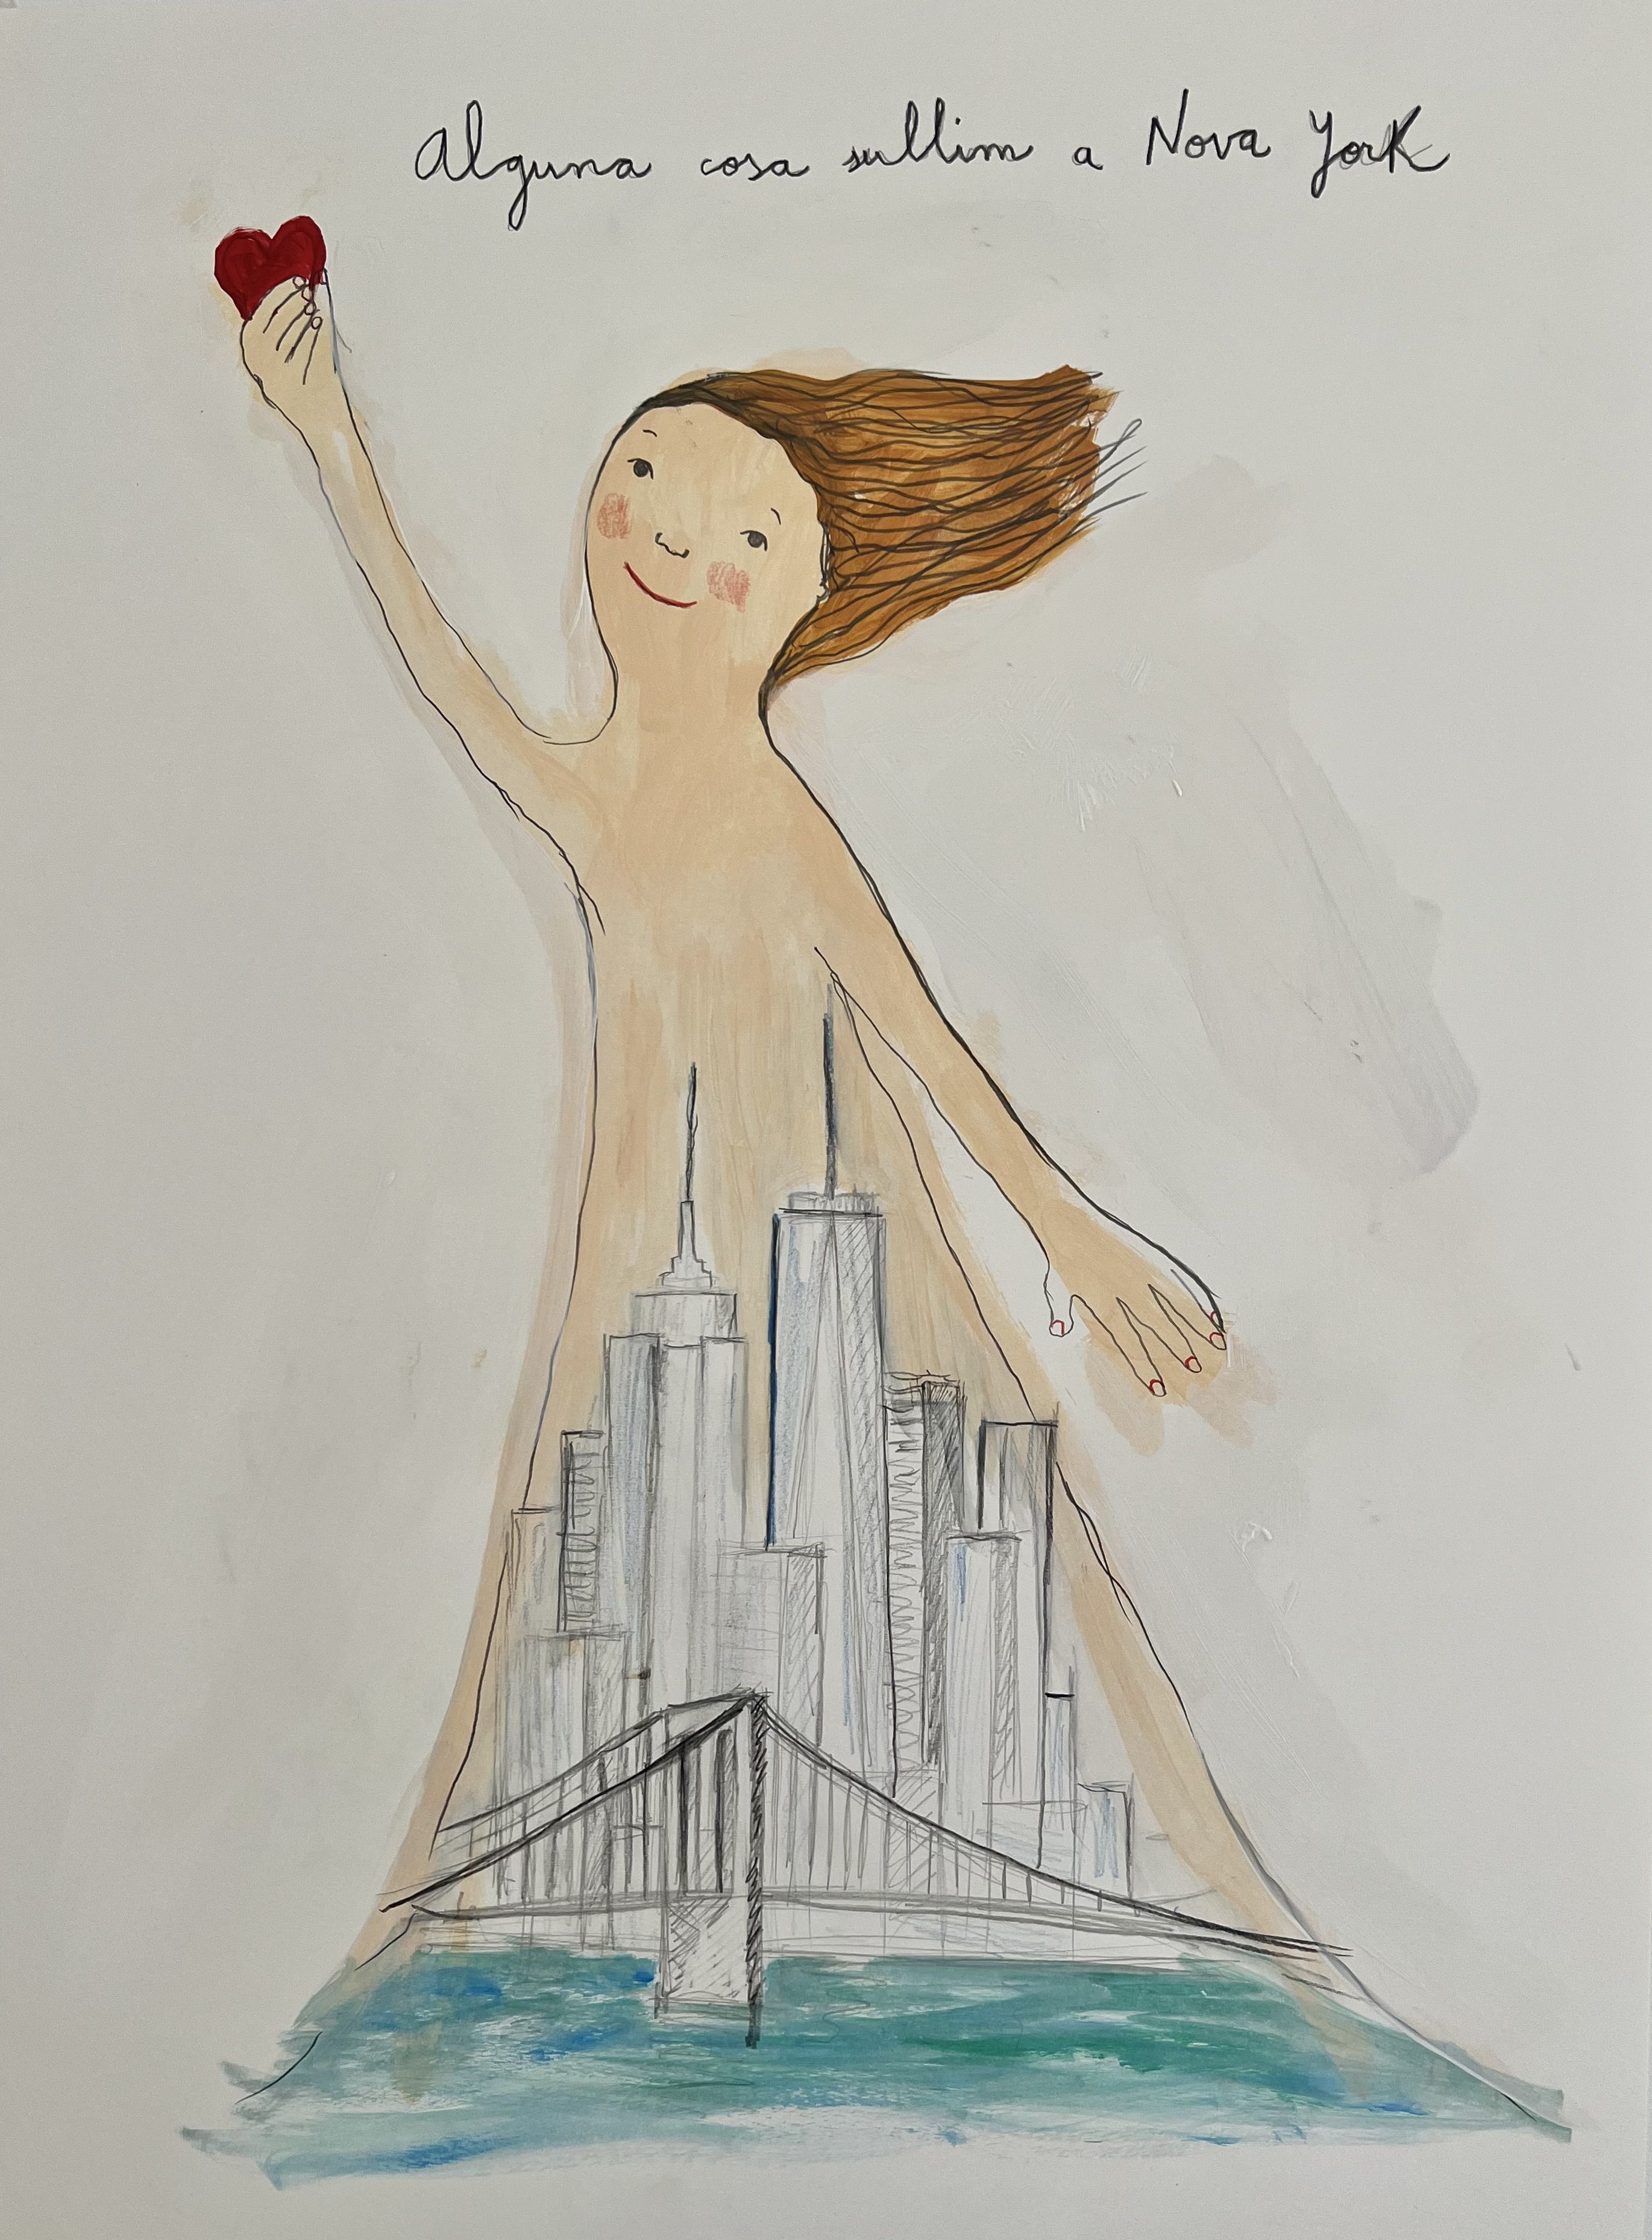 Text d'Eva Piquer sobre Nova York il·lustrat per Eva Armisén, en base al llibre "Matar el nervi".